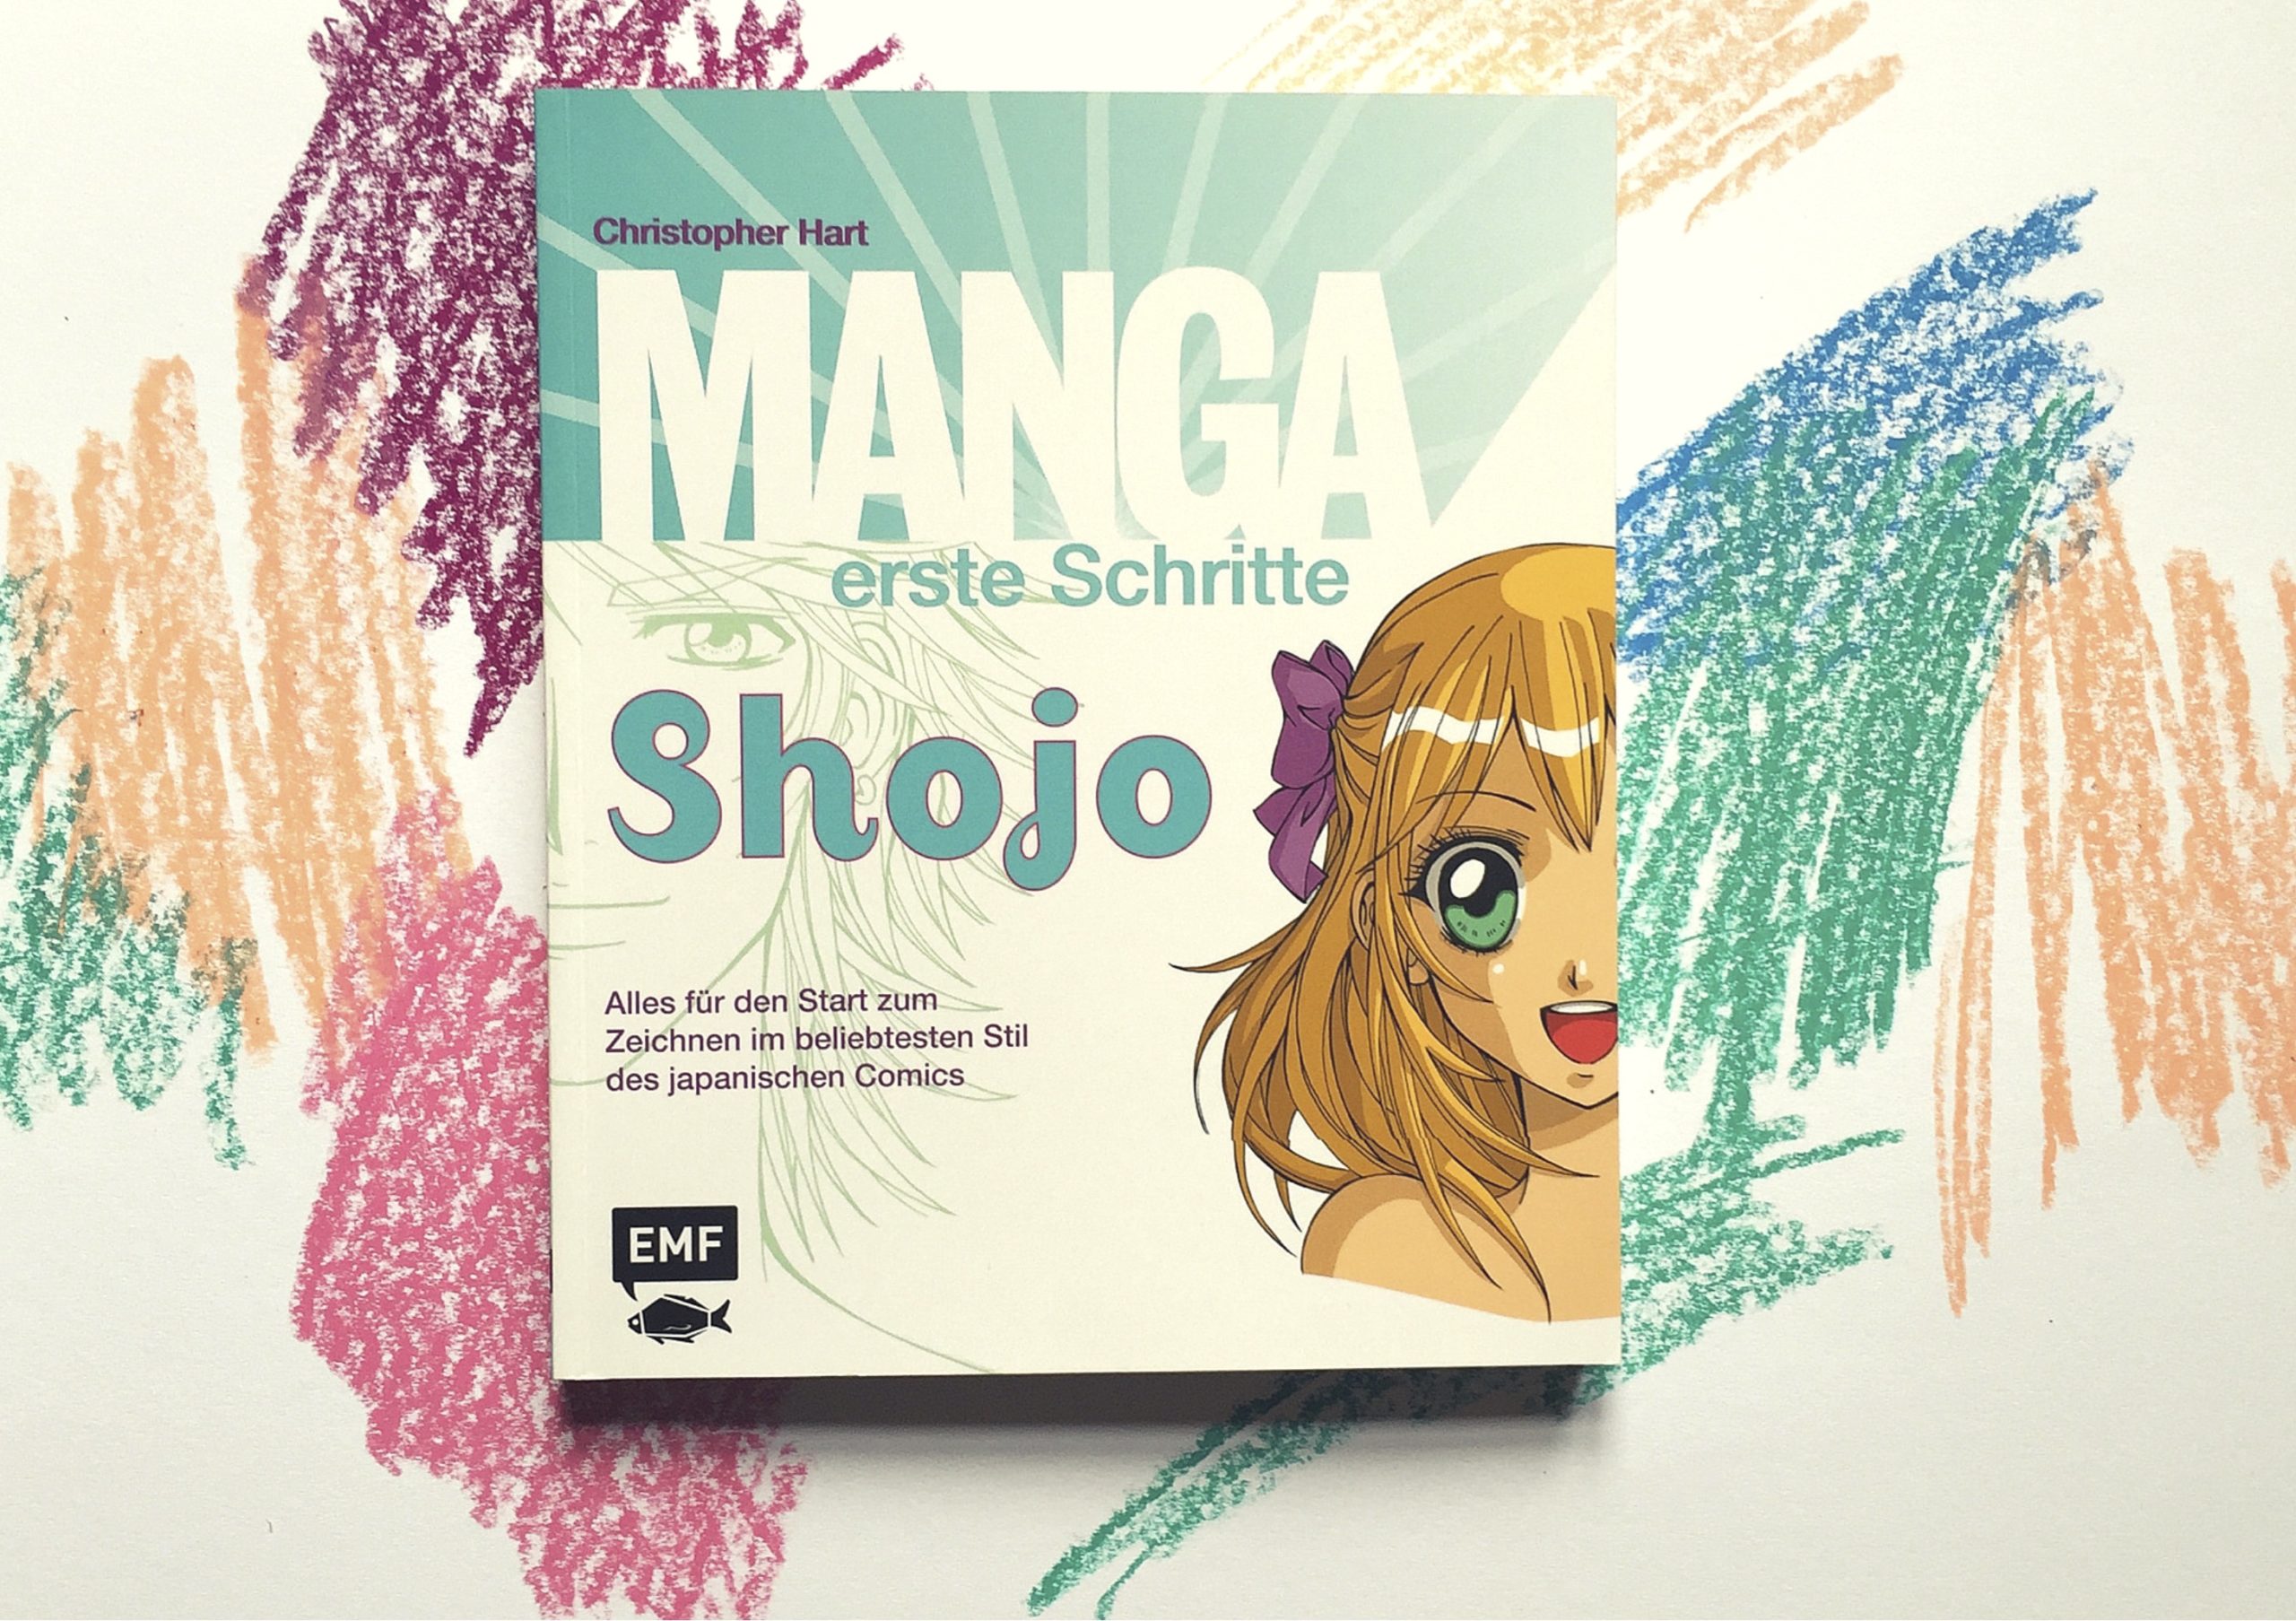 "Manga erste Schritte Shojo" von Edition Michael Fischer - auf Pinterest unter https://www.pinterest.com/EMF_Verlag/